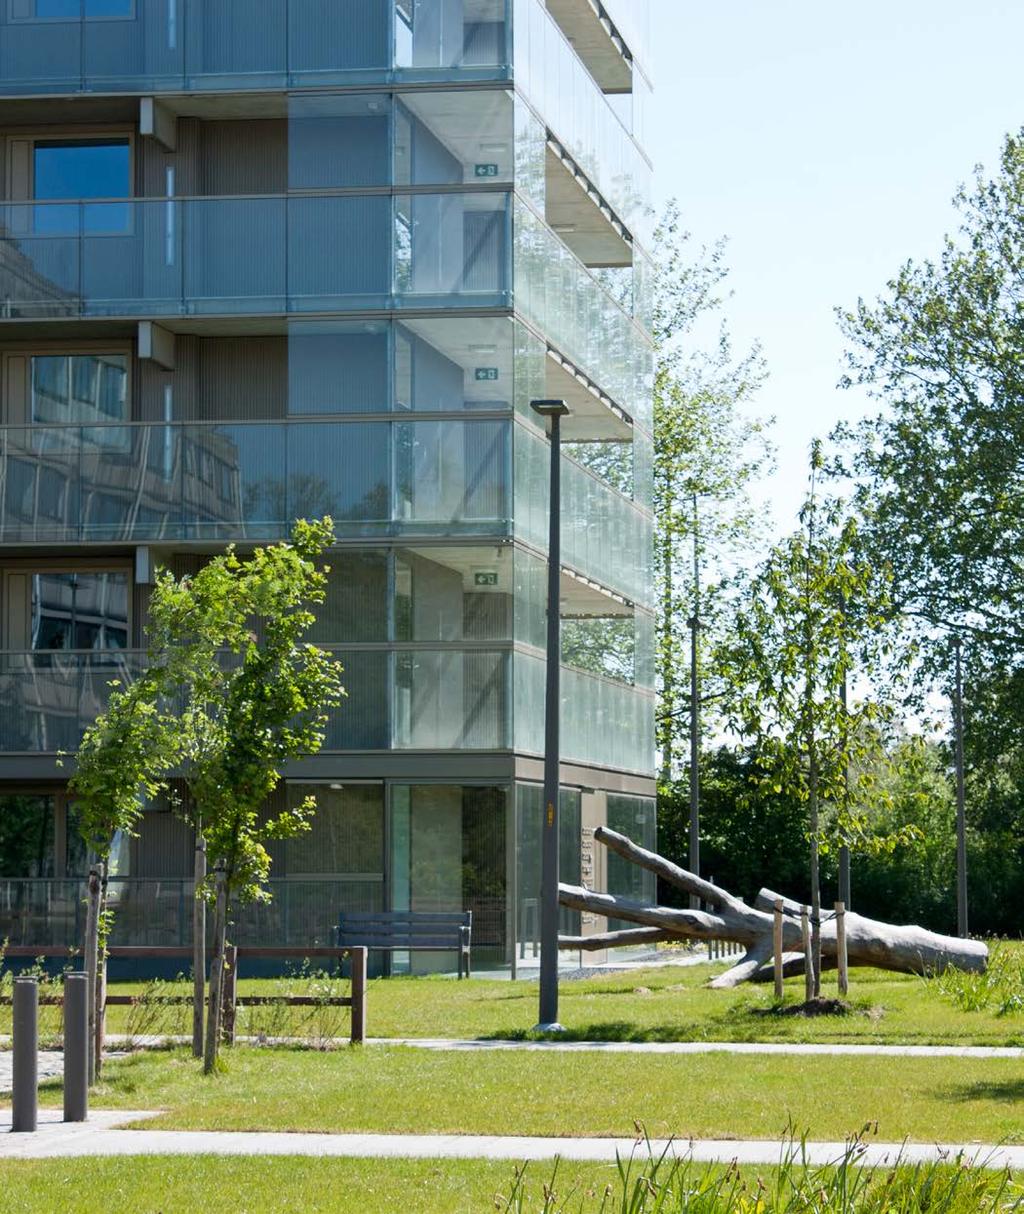 Rozemaai Antwerpen Buro Lubbers heeft een landschappelijkstedenbouwkundig masterplan opgesteld voor de herontwikkeling van woonwijk Rozemaai.